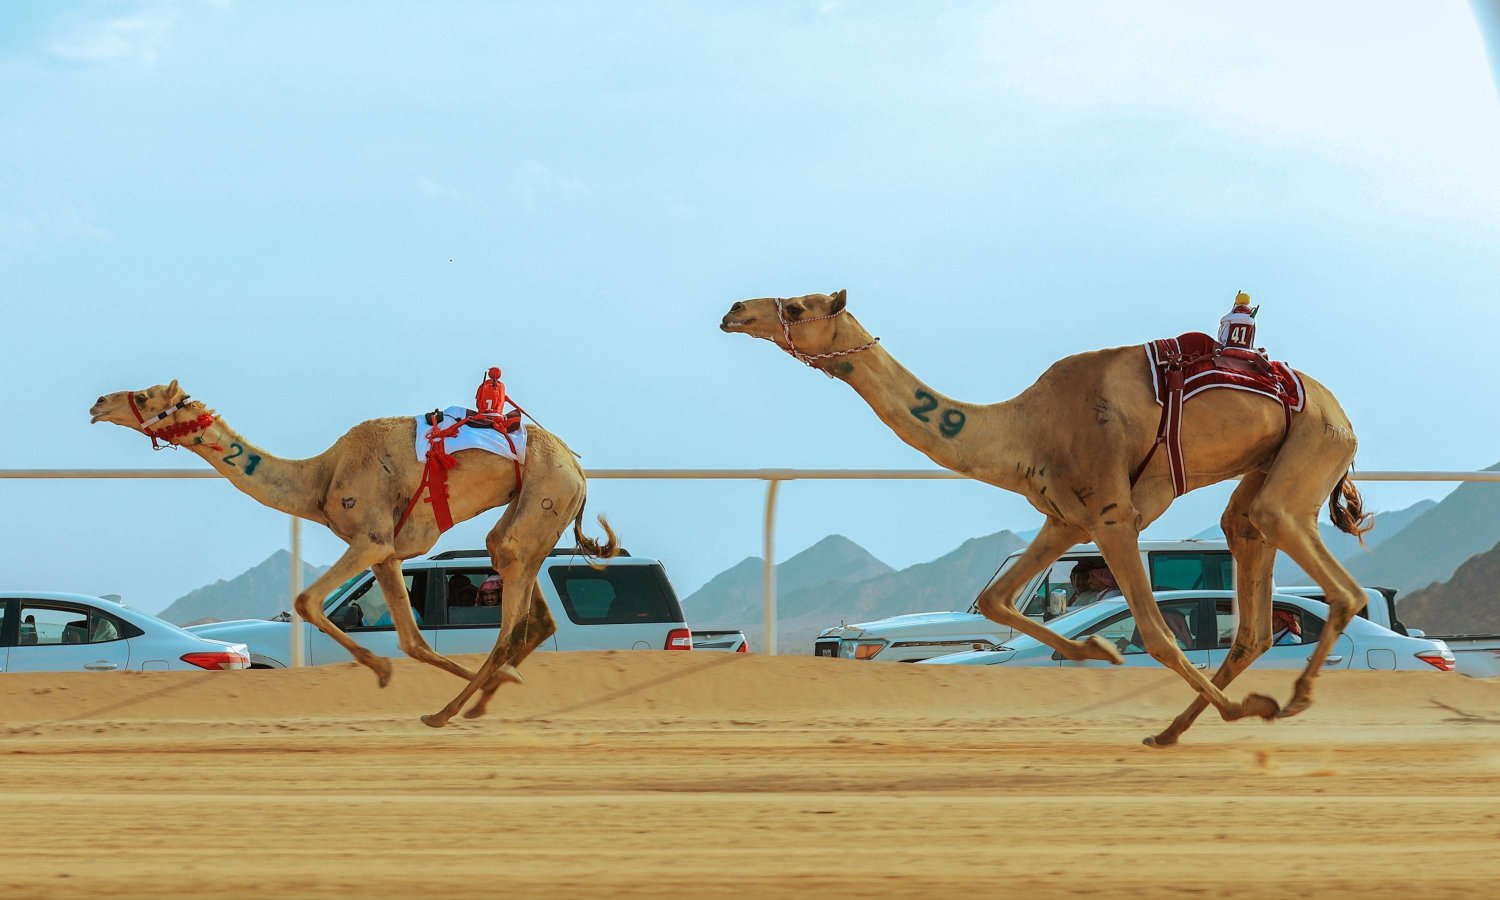 البطولة ستشهد إقامة 13 شوطاً مجموع مسافتها 72 كيلو متراً (الاتحاد السعودي للهجن)